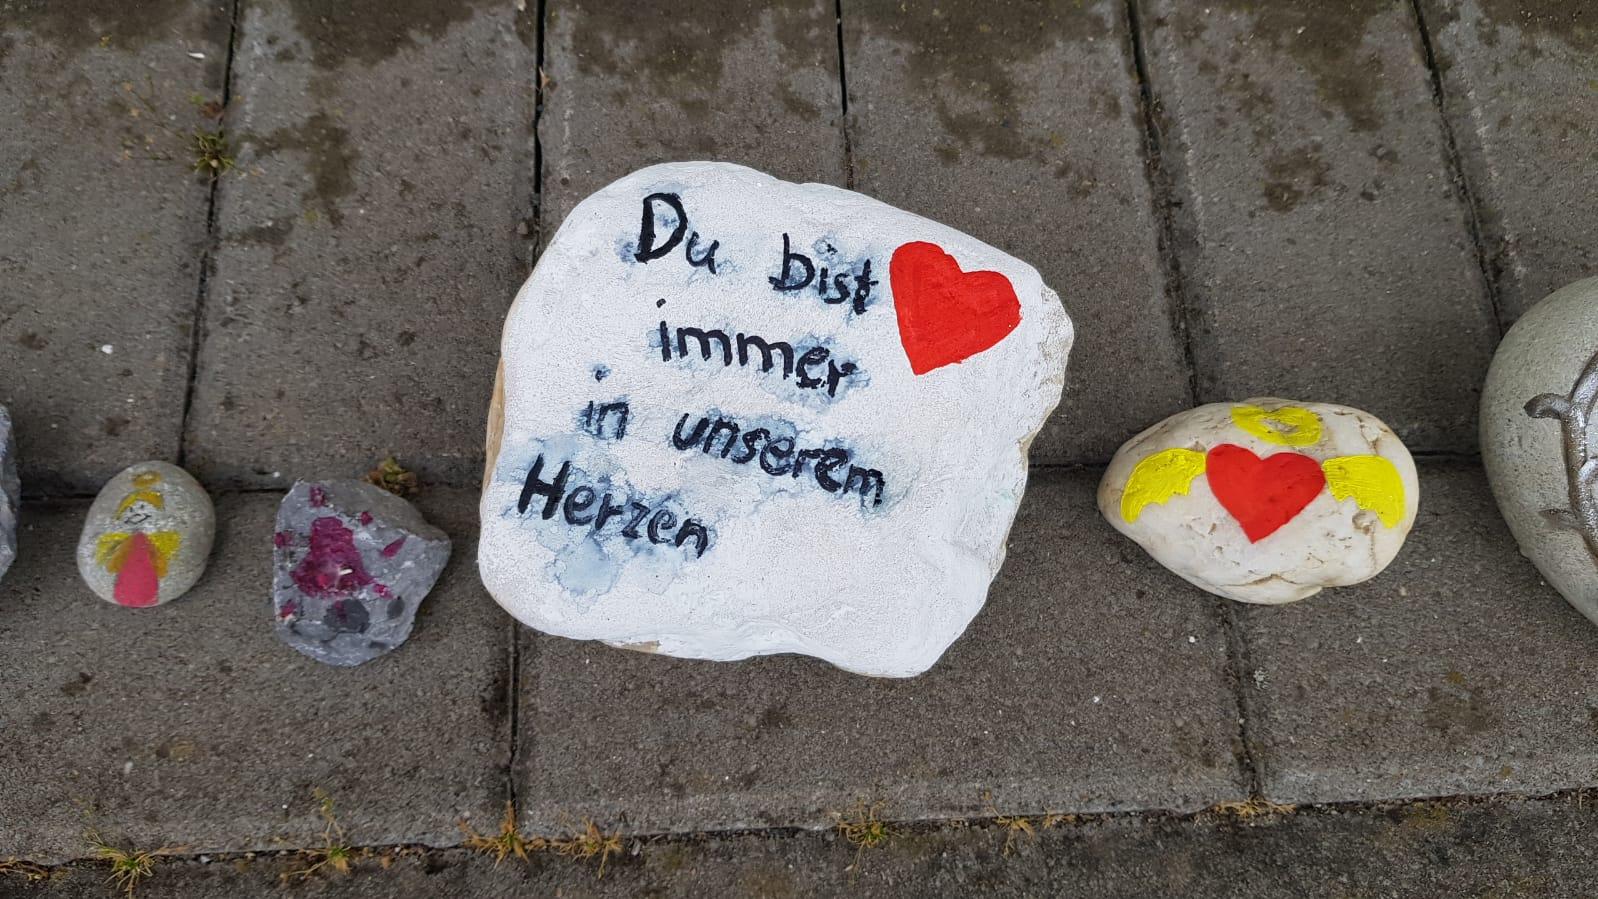 22.05.2020, Nordrhein-Westfalen, Viersen: Bemalte Steine liegen vor dem Eingang einer Kindertagesstätte in Viersen. In einer Viersener Kita soll eine Erzieherin ein dreijähriges Kind getötet haben. Die 25-Jährige sei festgenommen worden und befinde s